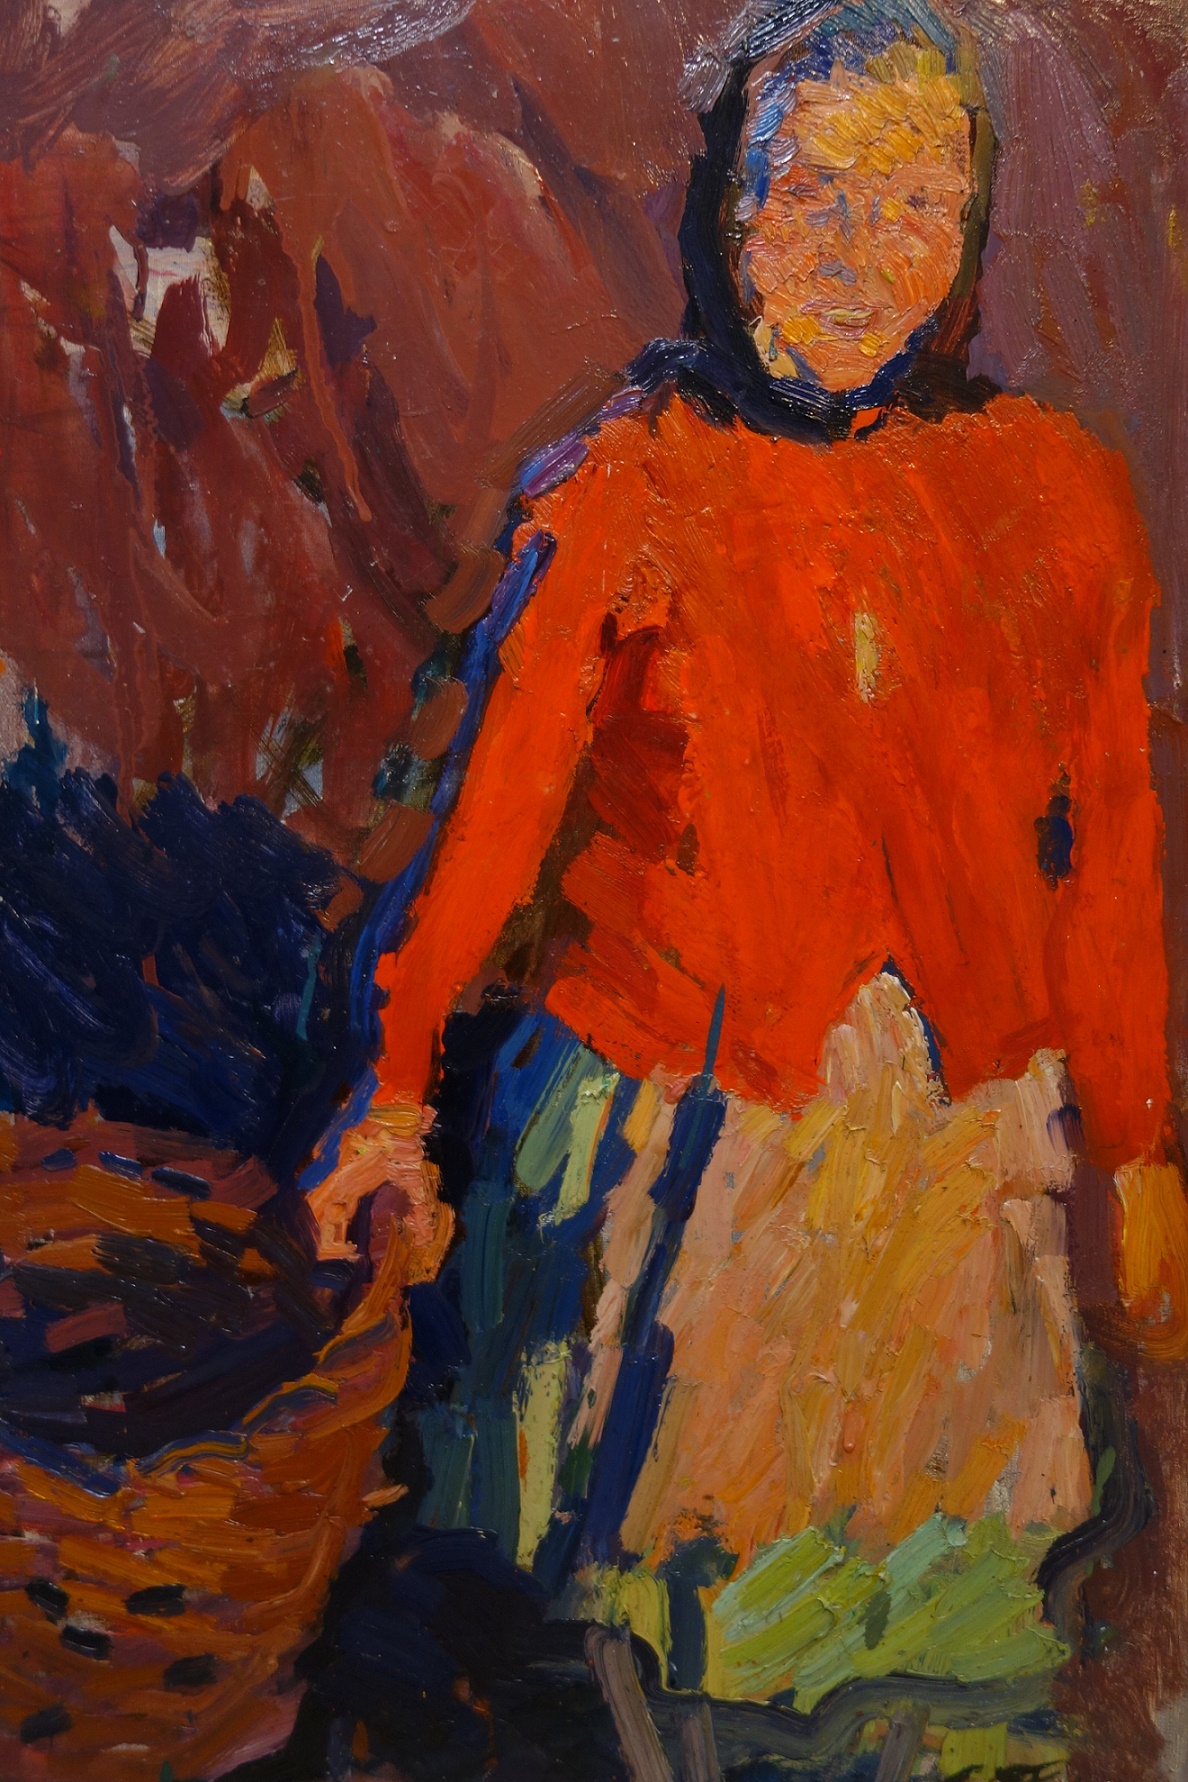 Tkacev, fratelli, pittura russa, post-impressionismo russo, impressionismo sovietico, realismo sovietico, figura, donna